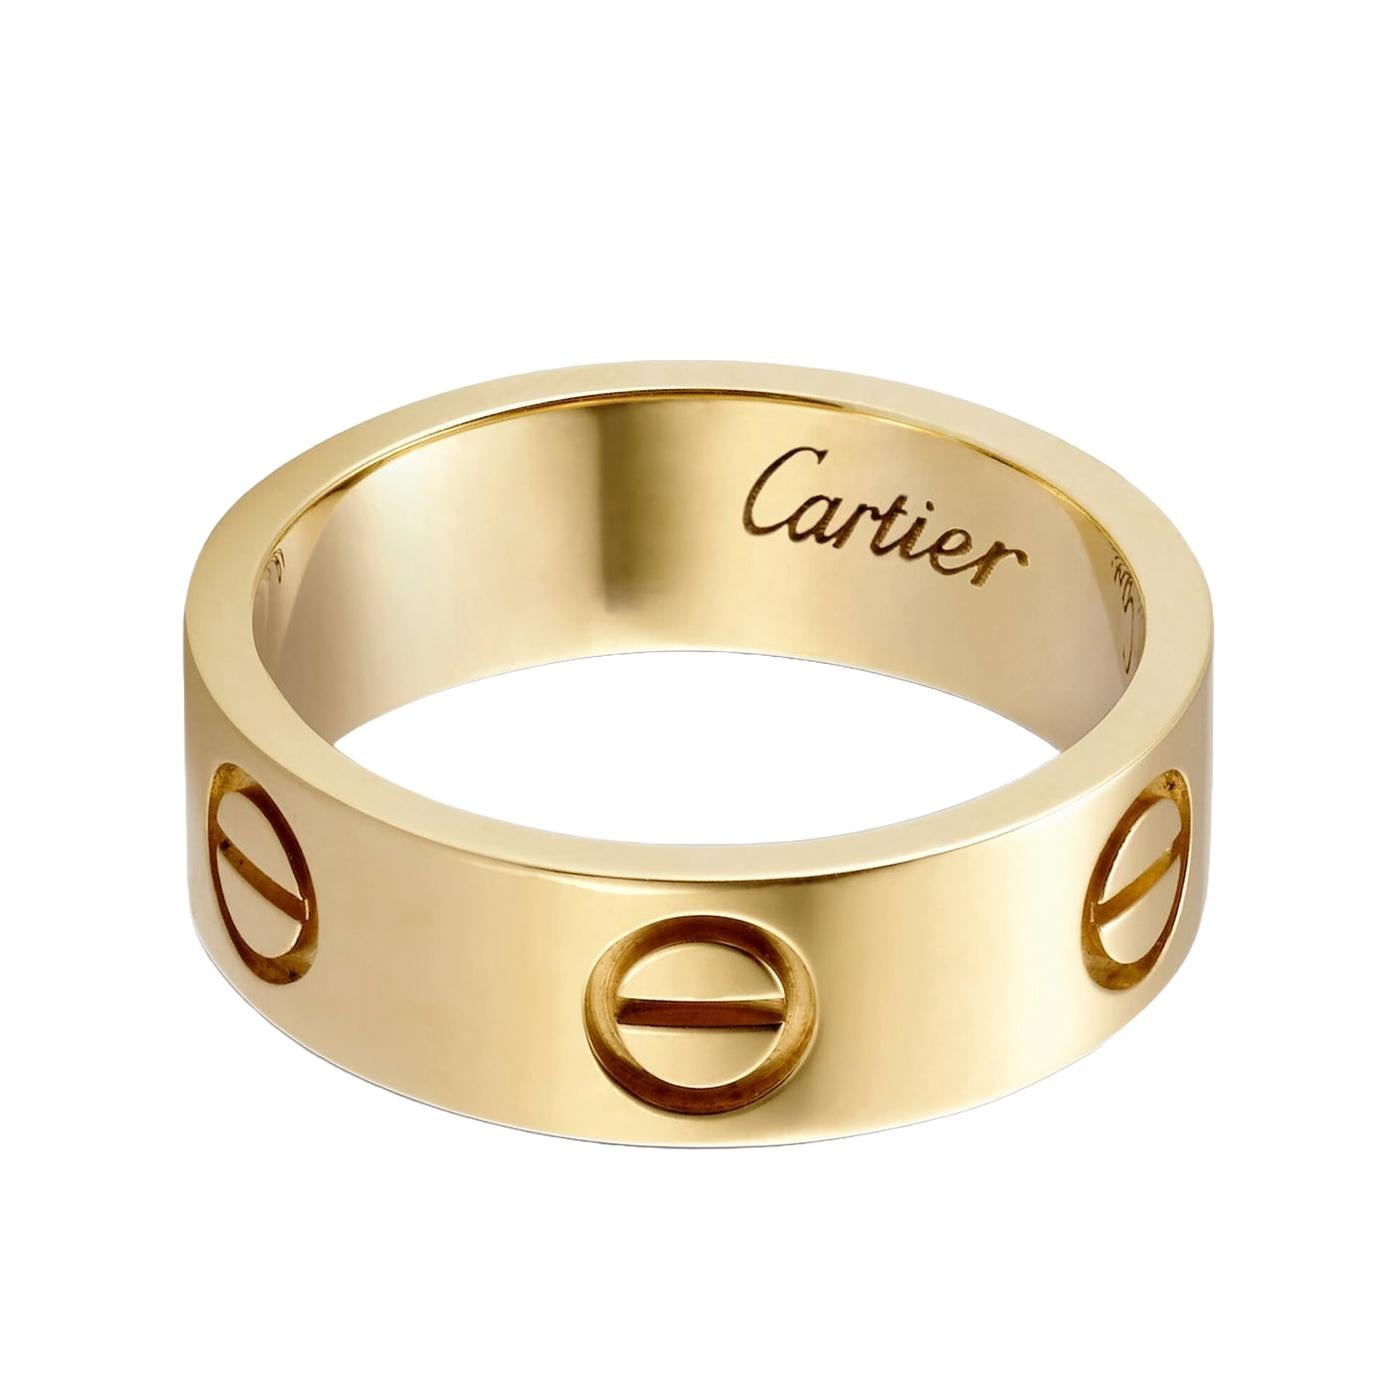 Cartier LOVE Ring, Gelbgold (750/1000). Breite: 5,5 mm (für Größe 55).

Einzelheiten:
Marke: Cartier
Stil: Liebesring
MATERIAL: Gelbgold
Cartier Größe: 55
Thema: Romantik, Liebe
Umfang der Lieferung: Box und Papiere
Gekauft: 2022

Anlässe: